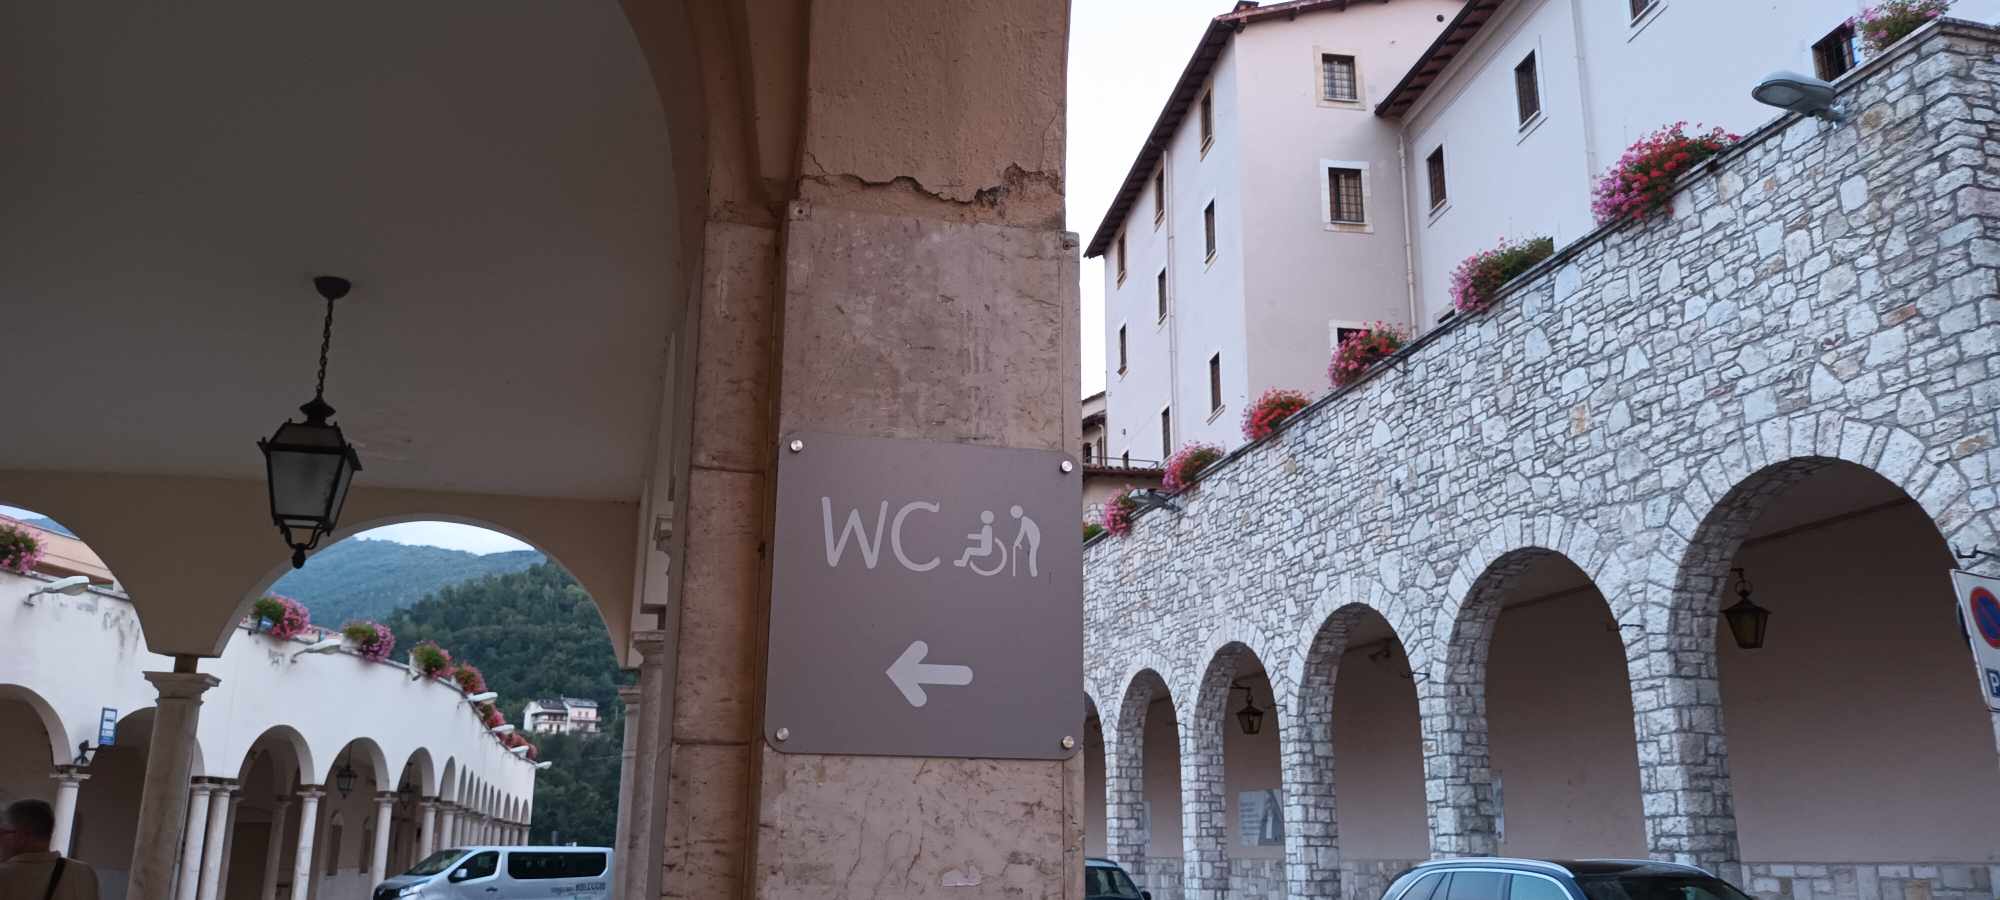 Jobboldalon régi árkádos épületet látunk, baloldalon szintén árkádok alatt a falon egy jelzés az akadálymentes WC-t mutatva.